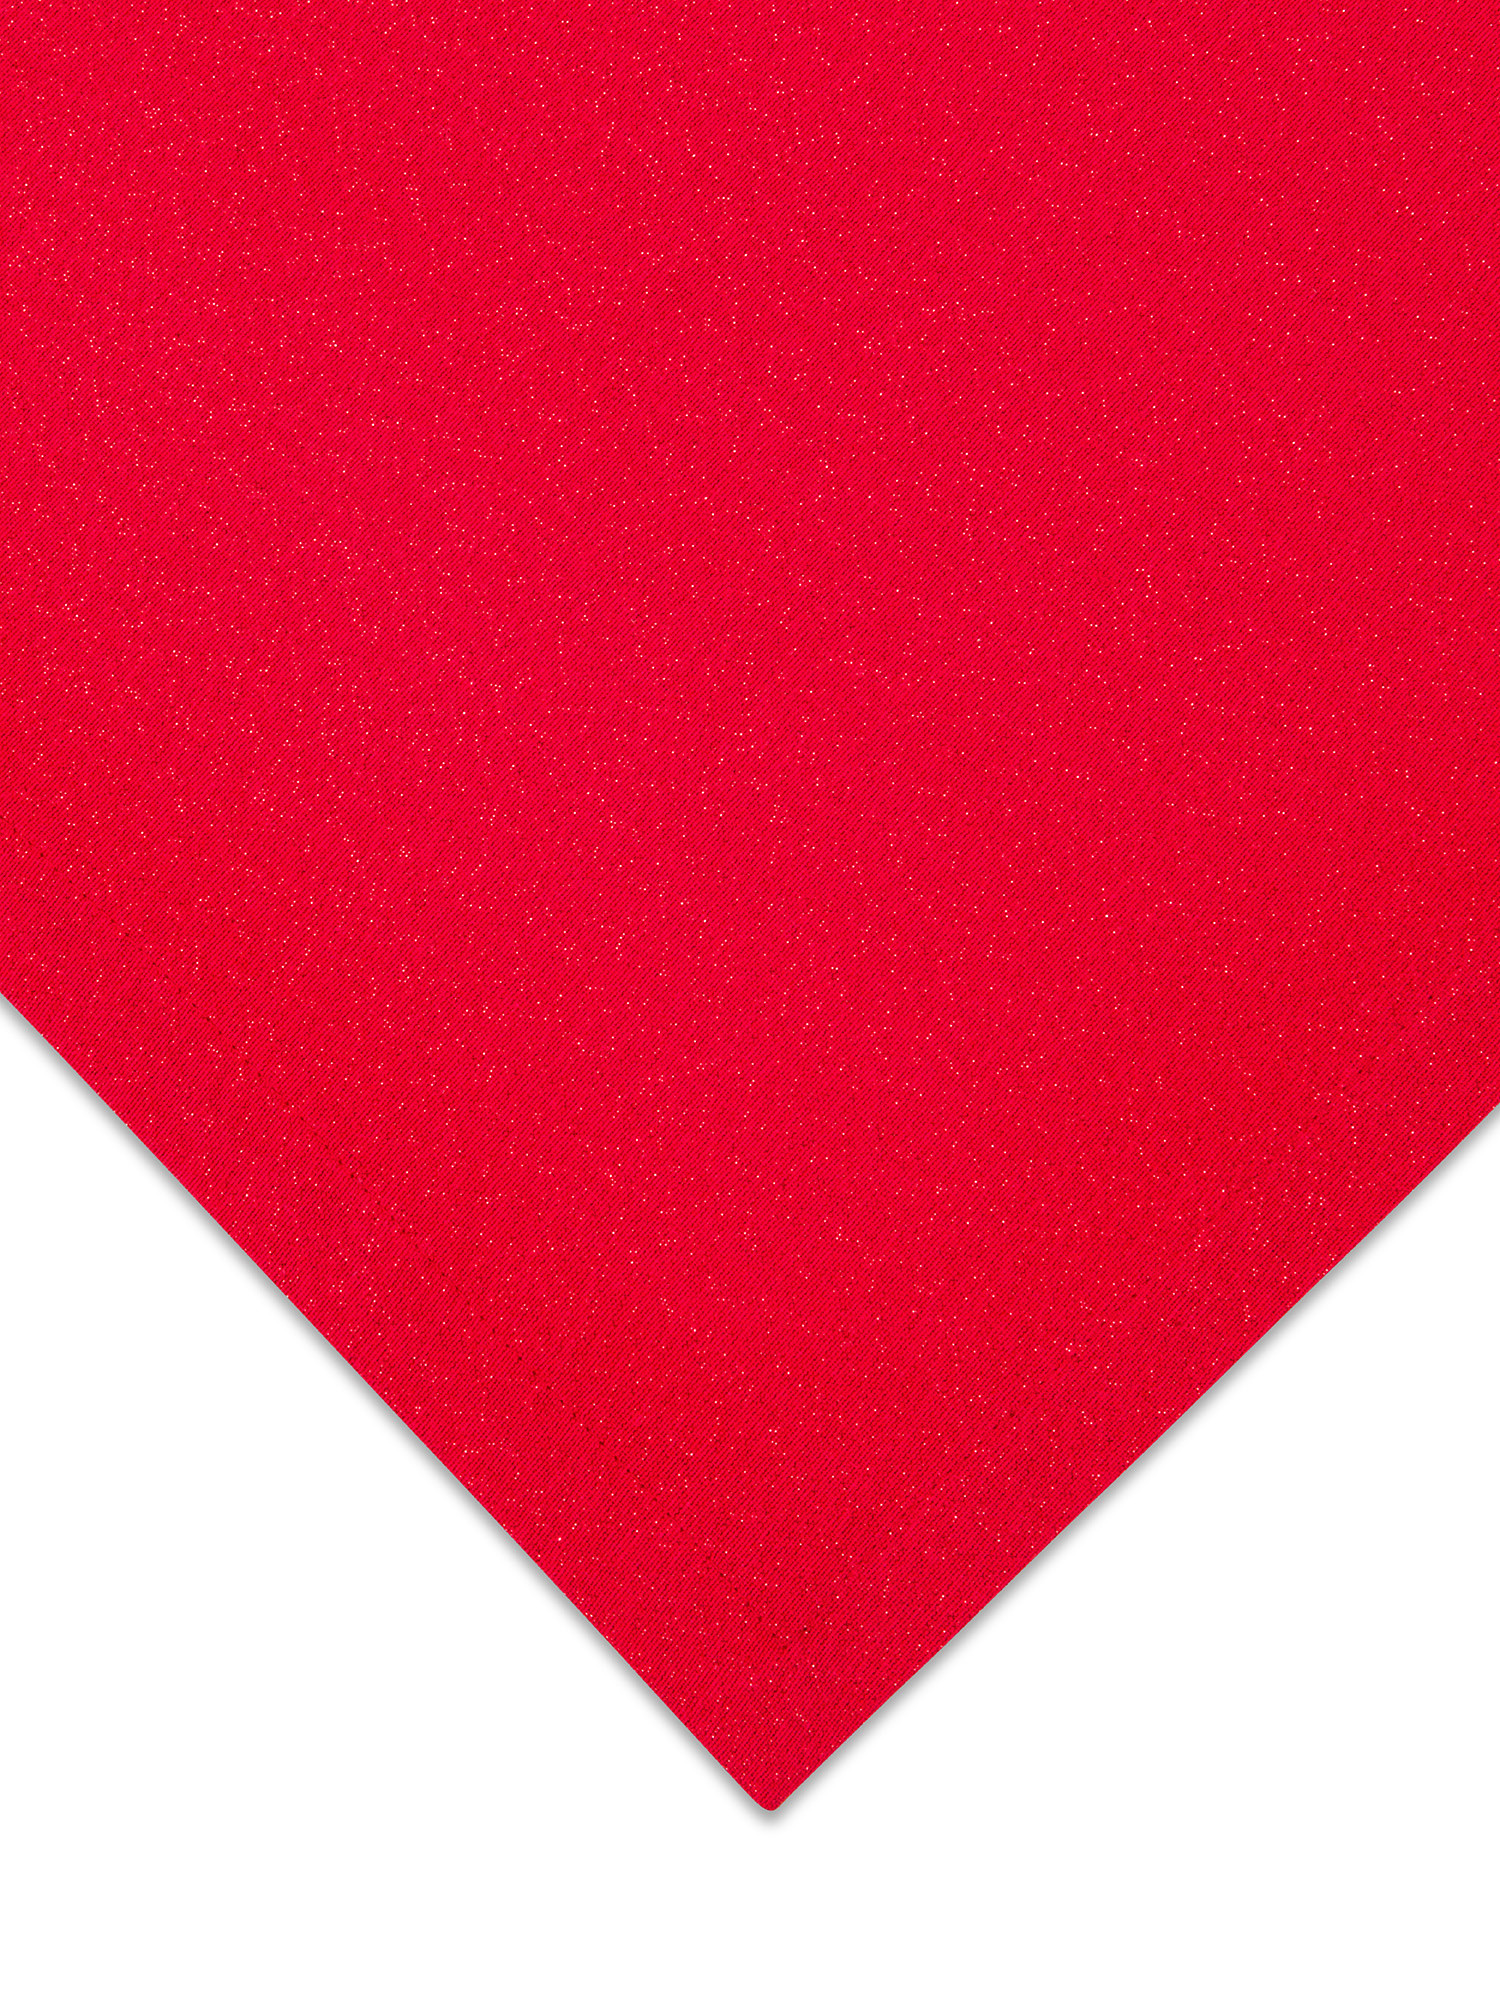 Tovaglia cotone con fili lurex, Rosso, large image number 1